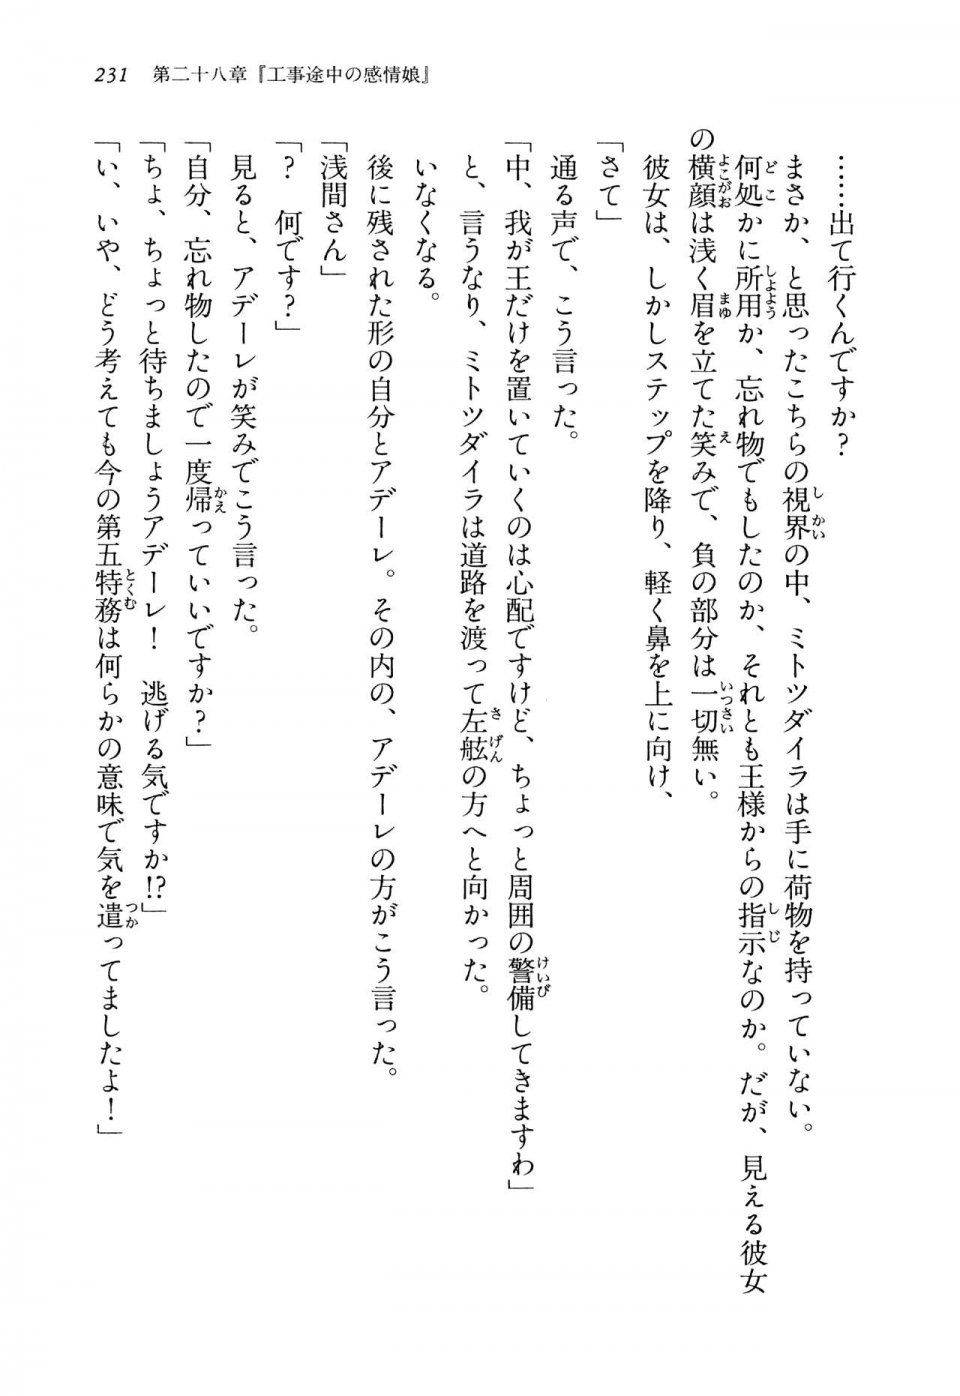 Kyoukai Senjou no Horizon LN Vol 14(6B) - Photo #231